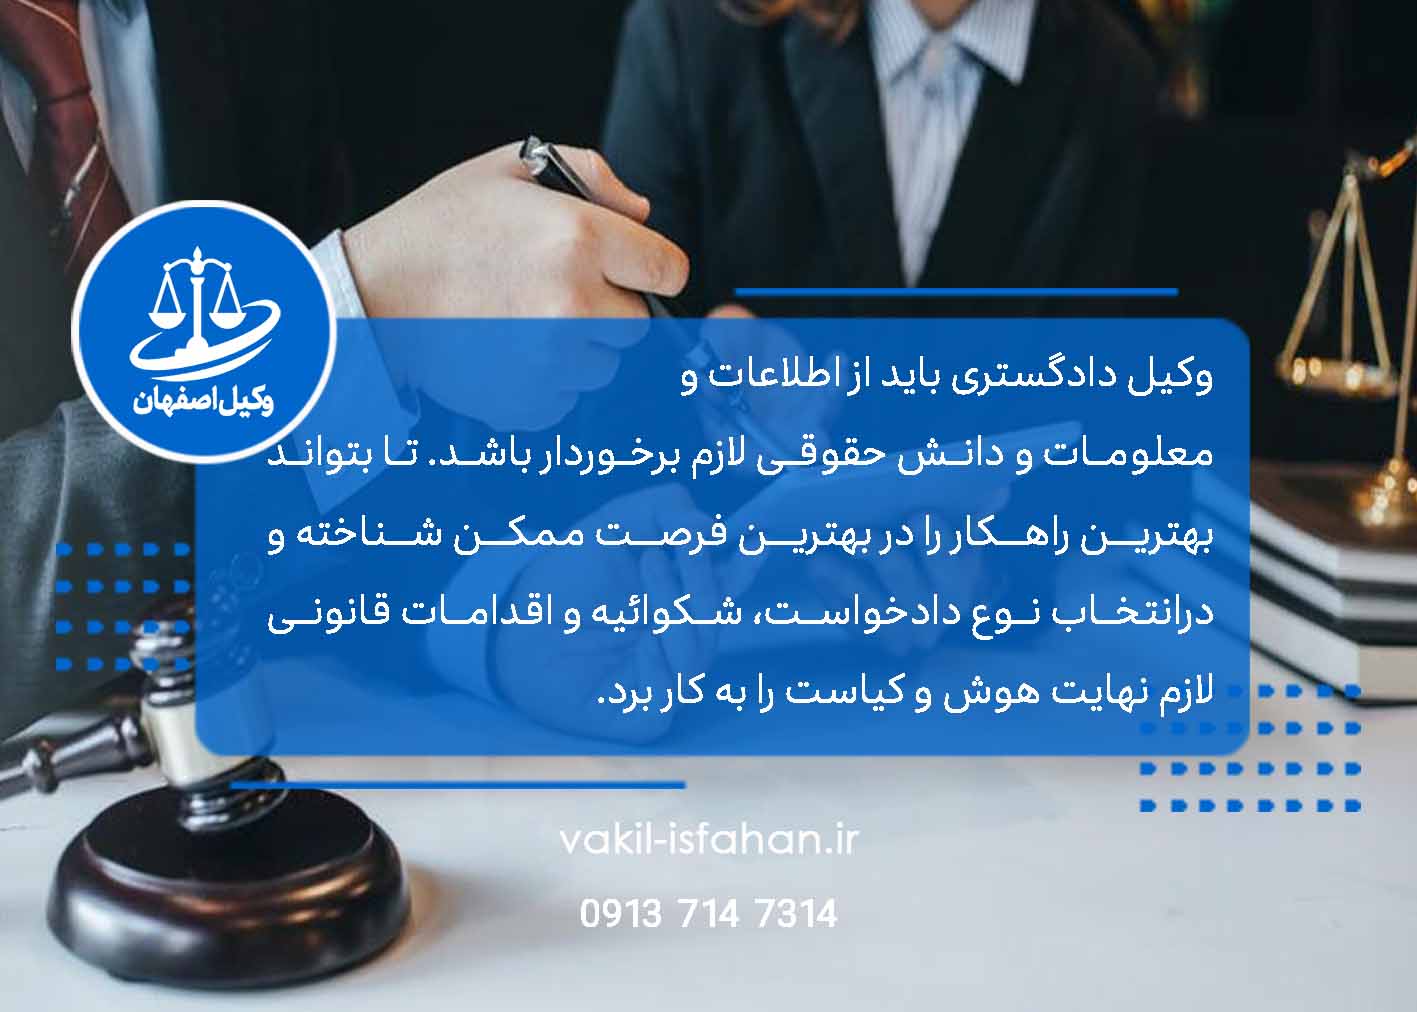 وکیل پایه یک دادگستری اصفهان ، وکیل اصفهان ، مشاوره حقوقی ، وکیل ، وکالت 